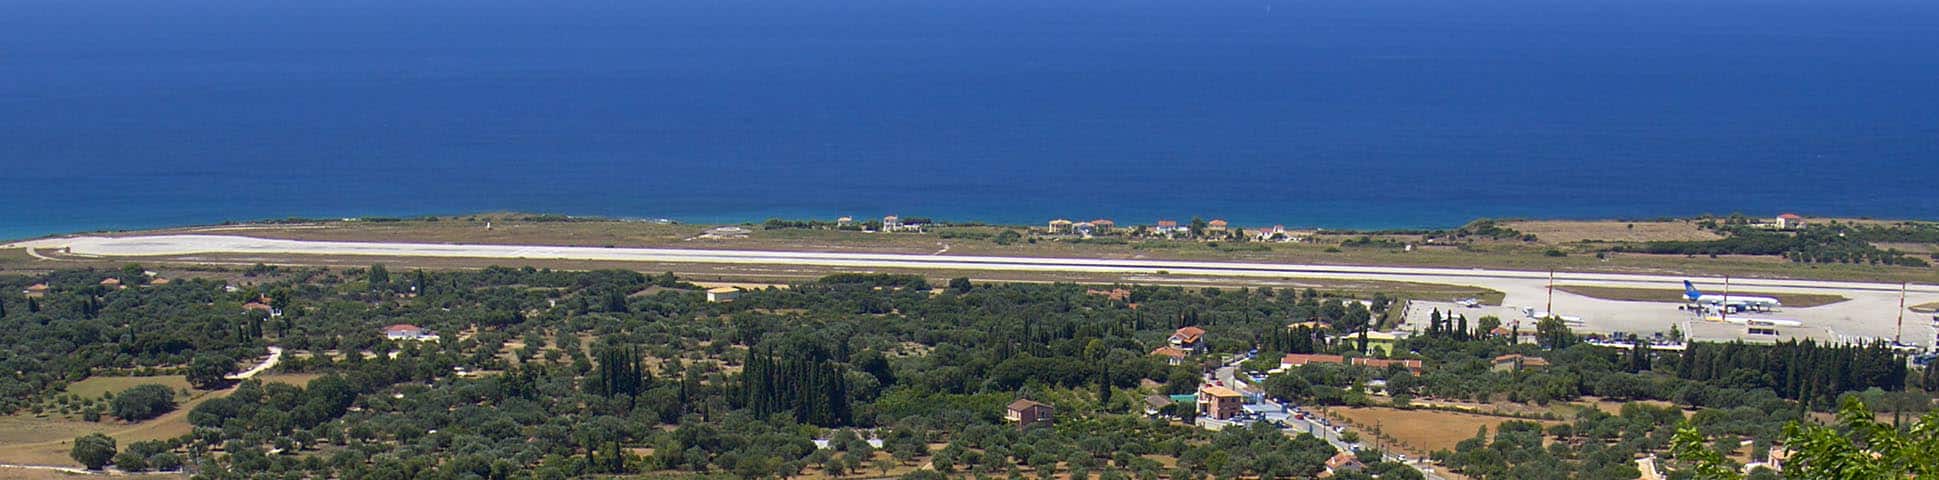 Blick auf den Flughafen von Kefalonia